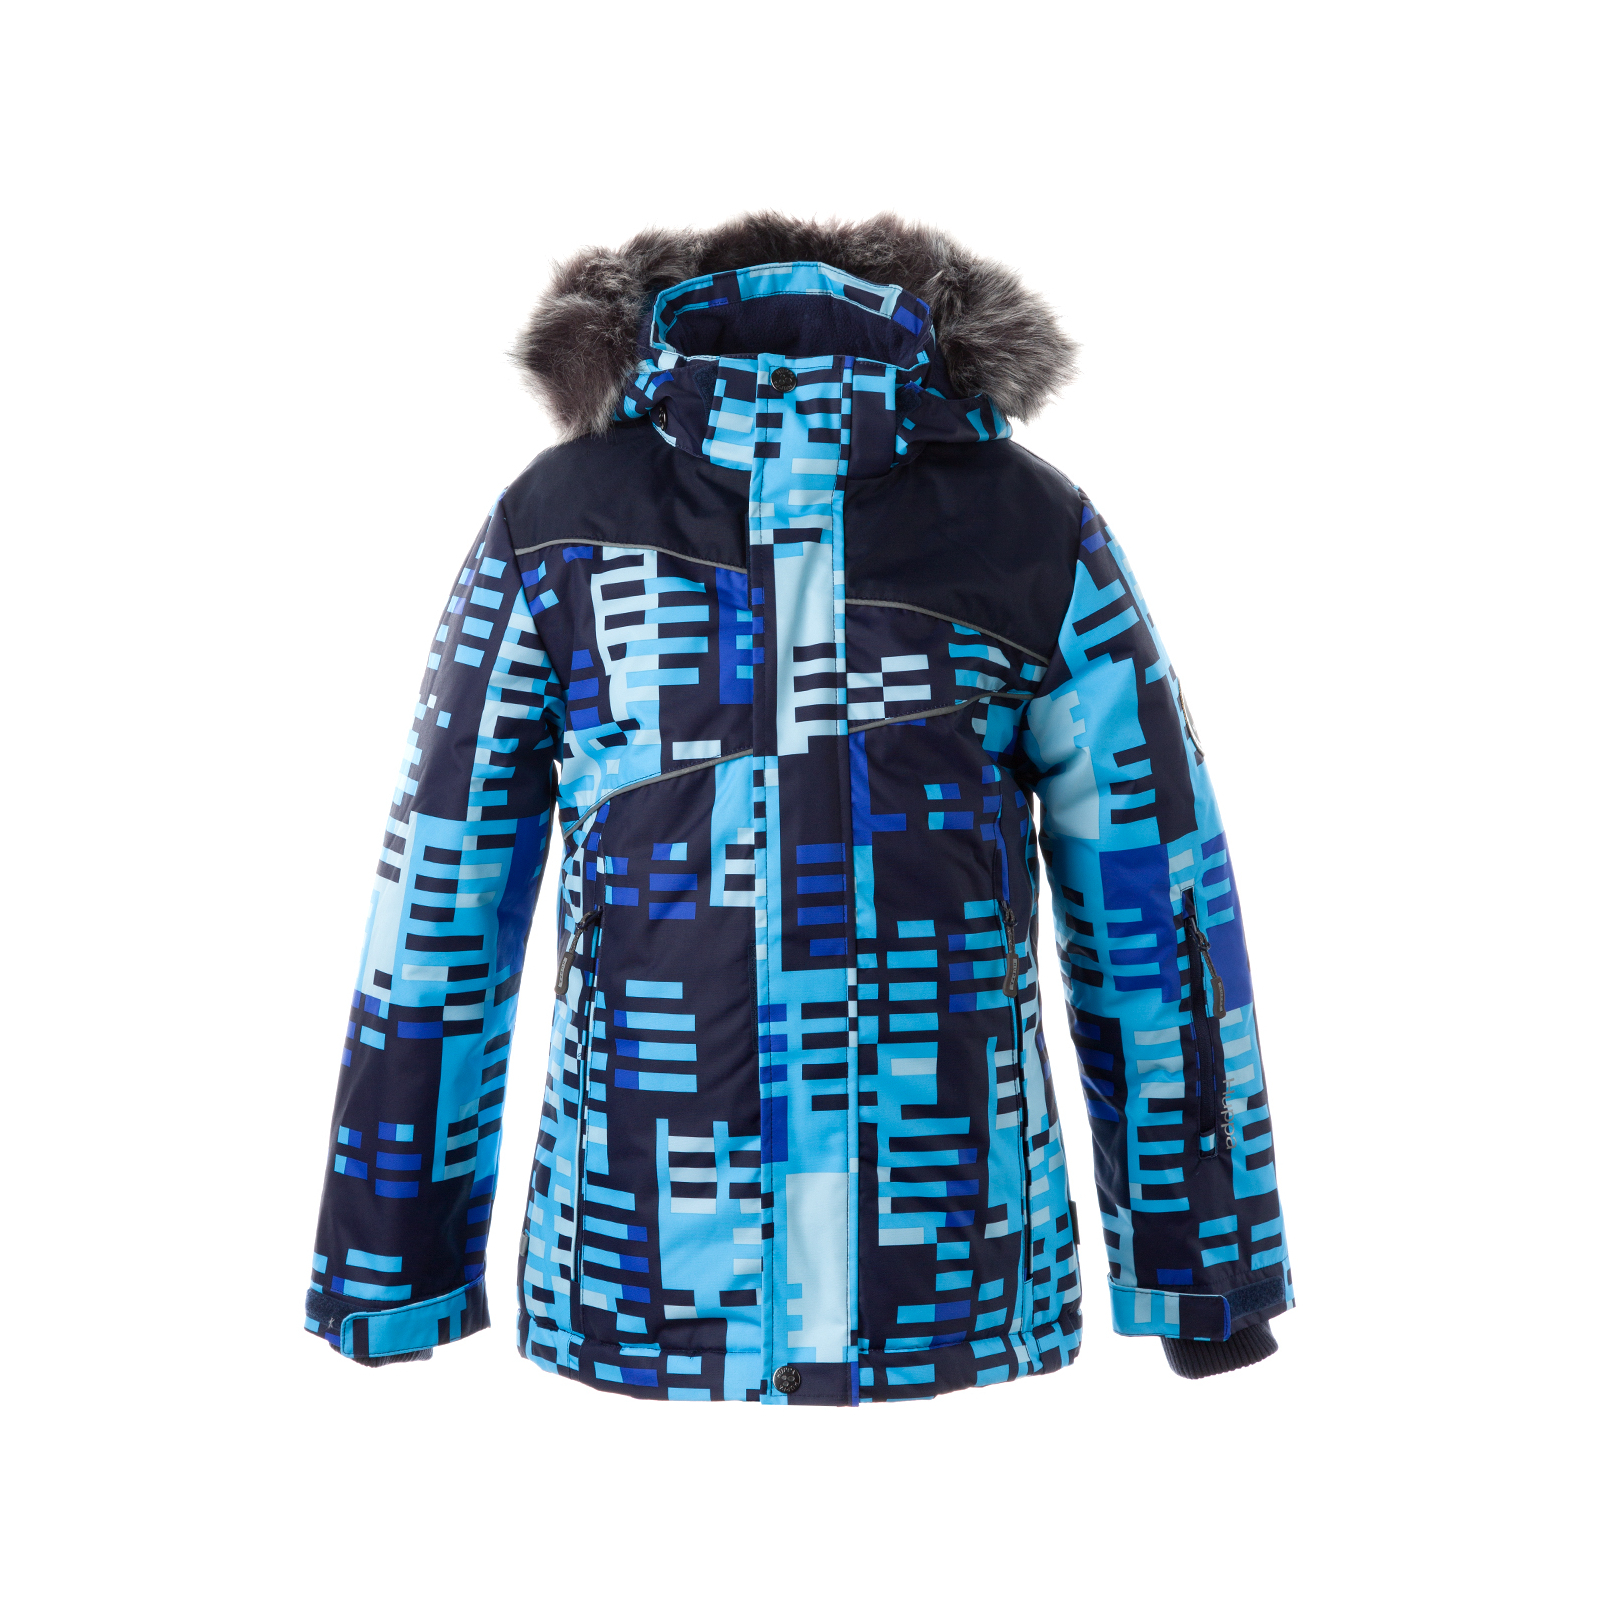 Куртка Huppa NORTONY 1 17440130 синий с принтом/тёмно-синий 134 (4741468964560) изображение 2